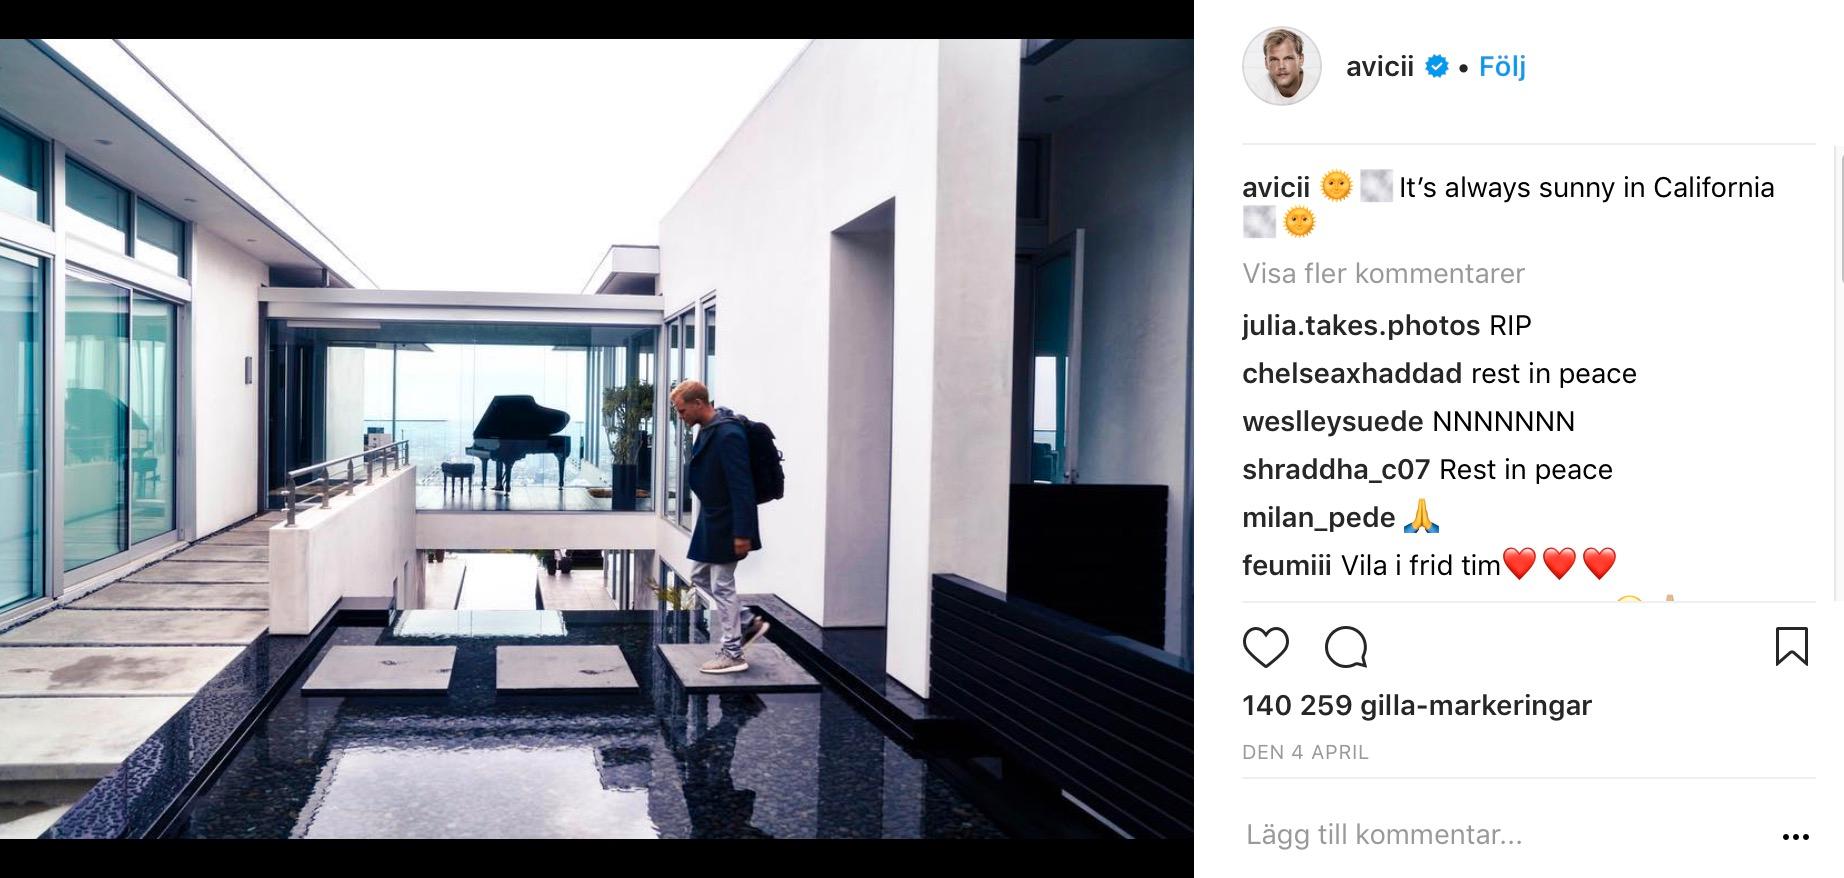 Sista inlägget på Aviciis oficiella Instagramkonto ”Avicii”, daterat den 4 april. 